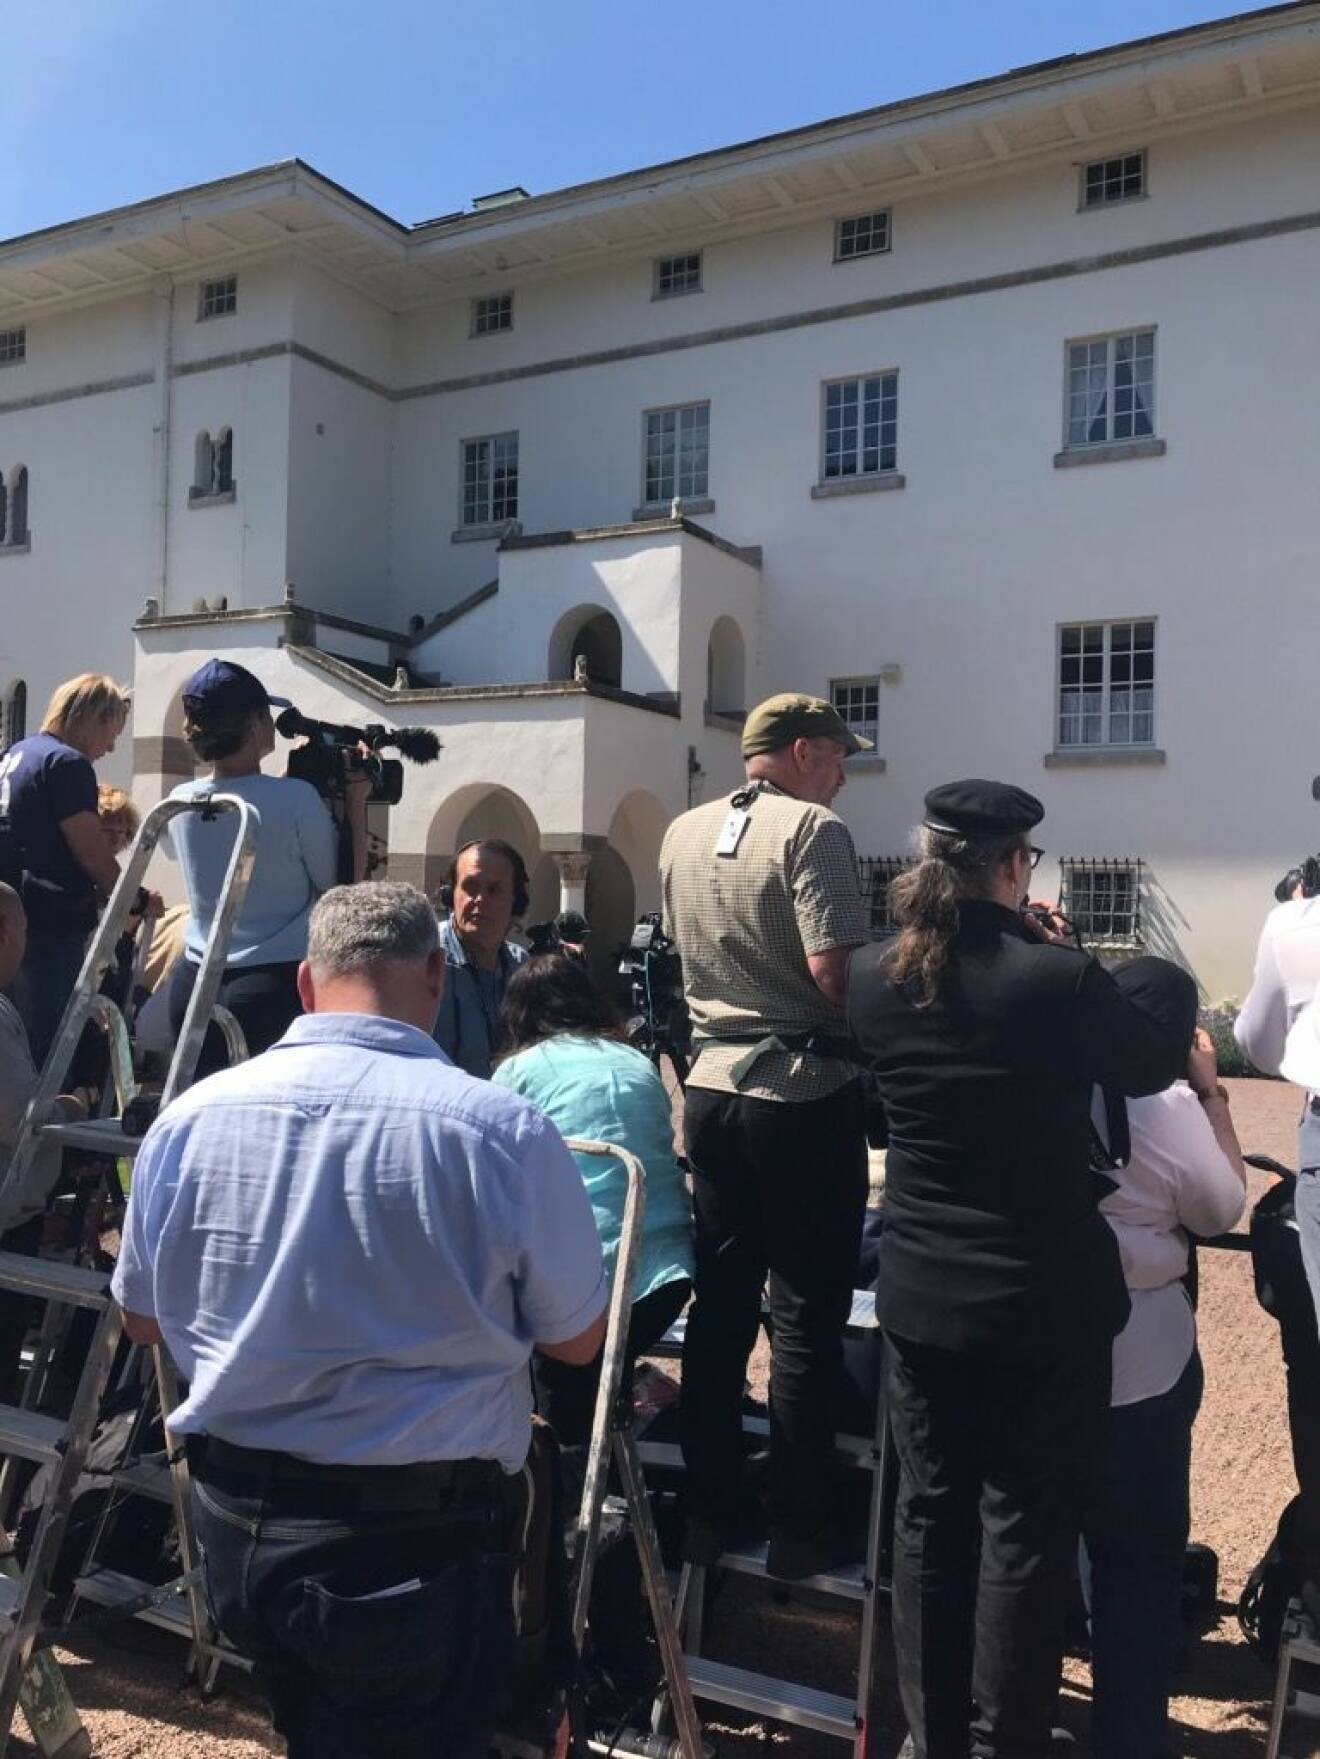 50 journalister och fotografer var på plats utanför Sollidens slott!